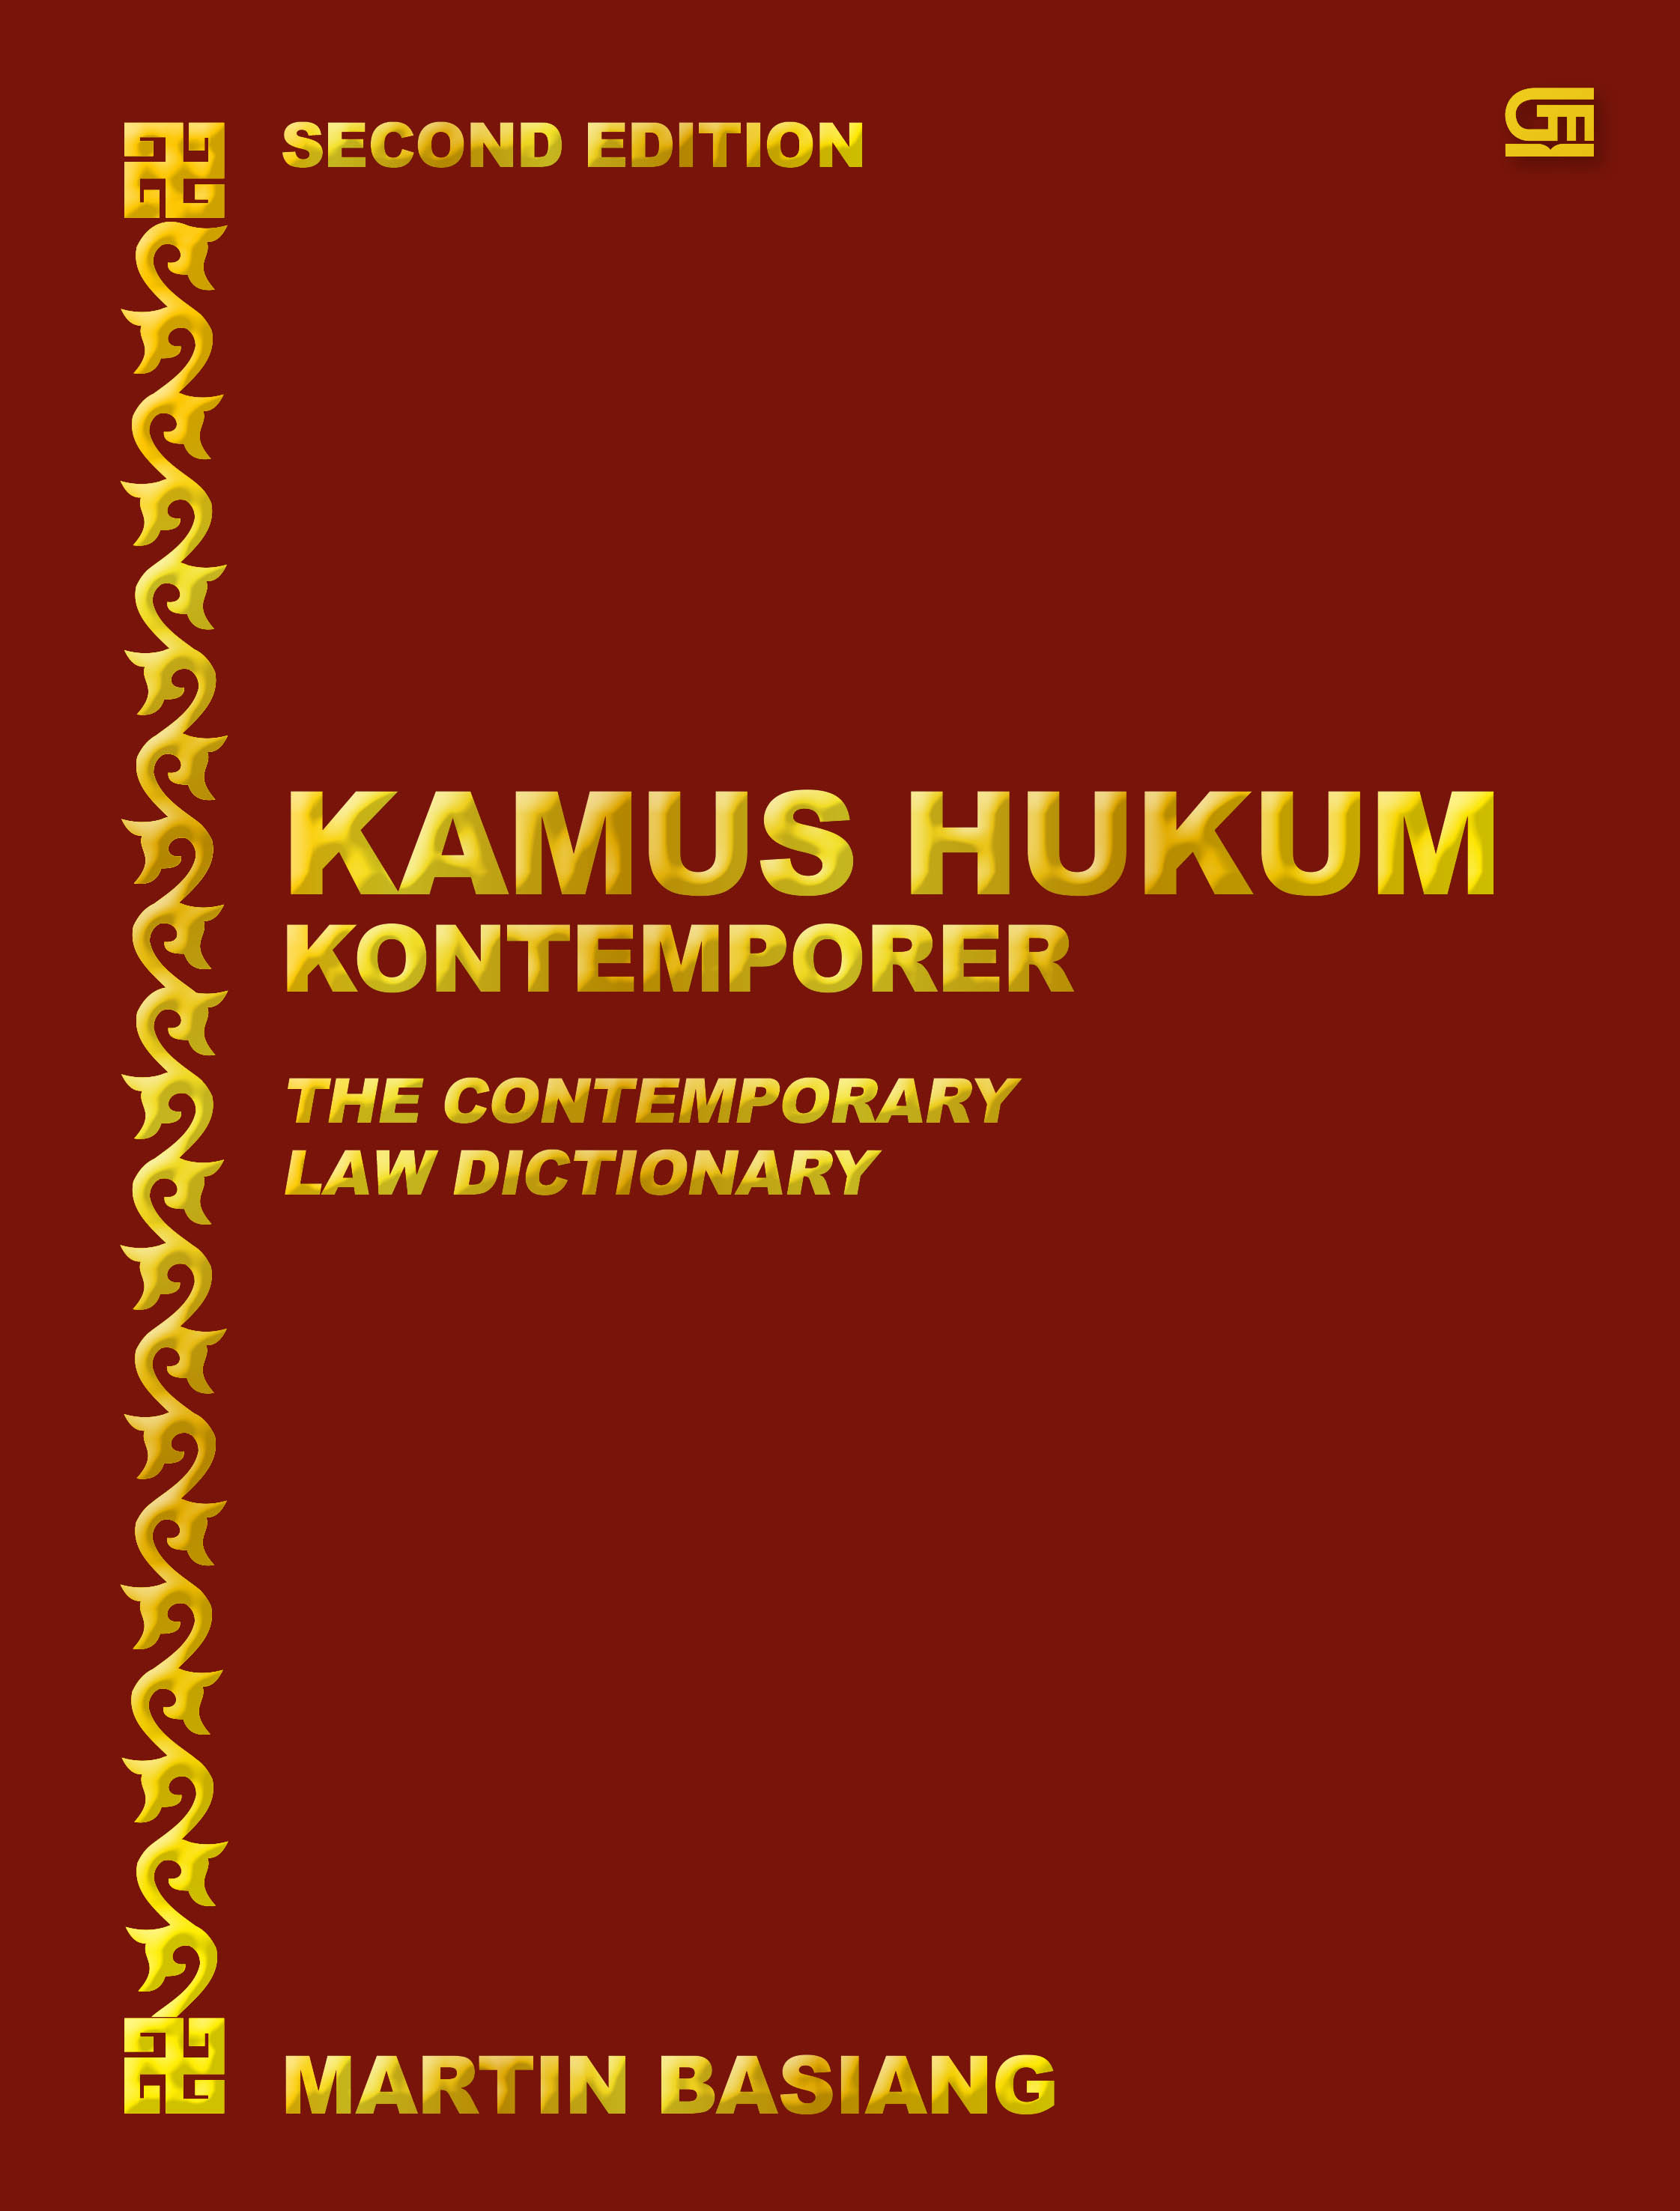 Kamus Hukum Kontemporer: The Contemporary Law Dictionary